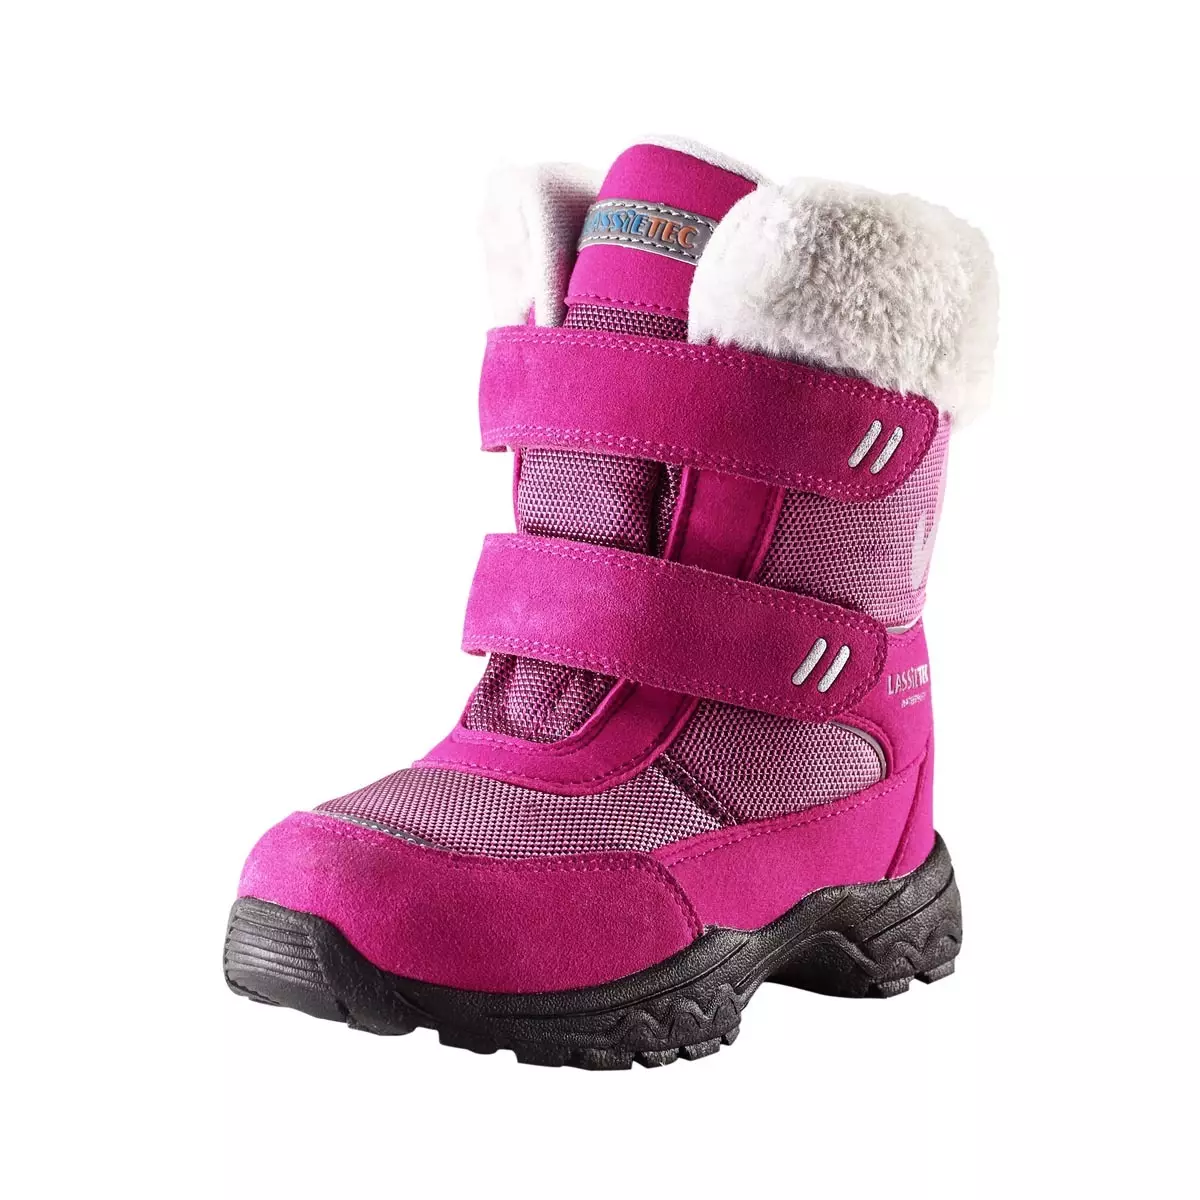 Reim Boots (72 сурет): қызыл балаларға арналған қысқы балалар модельдері, Reima, өлшемді тор және шолулар Reima 2256_37